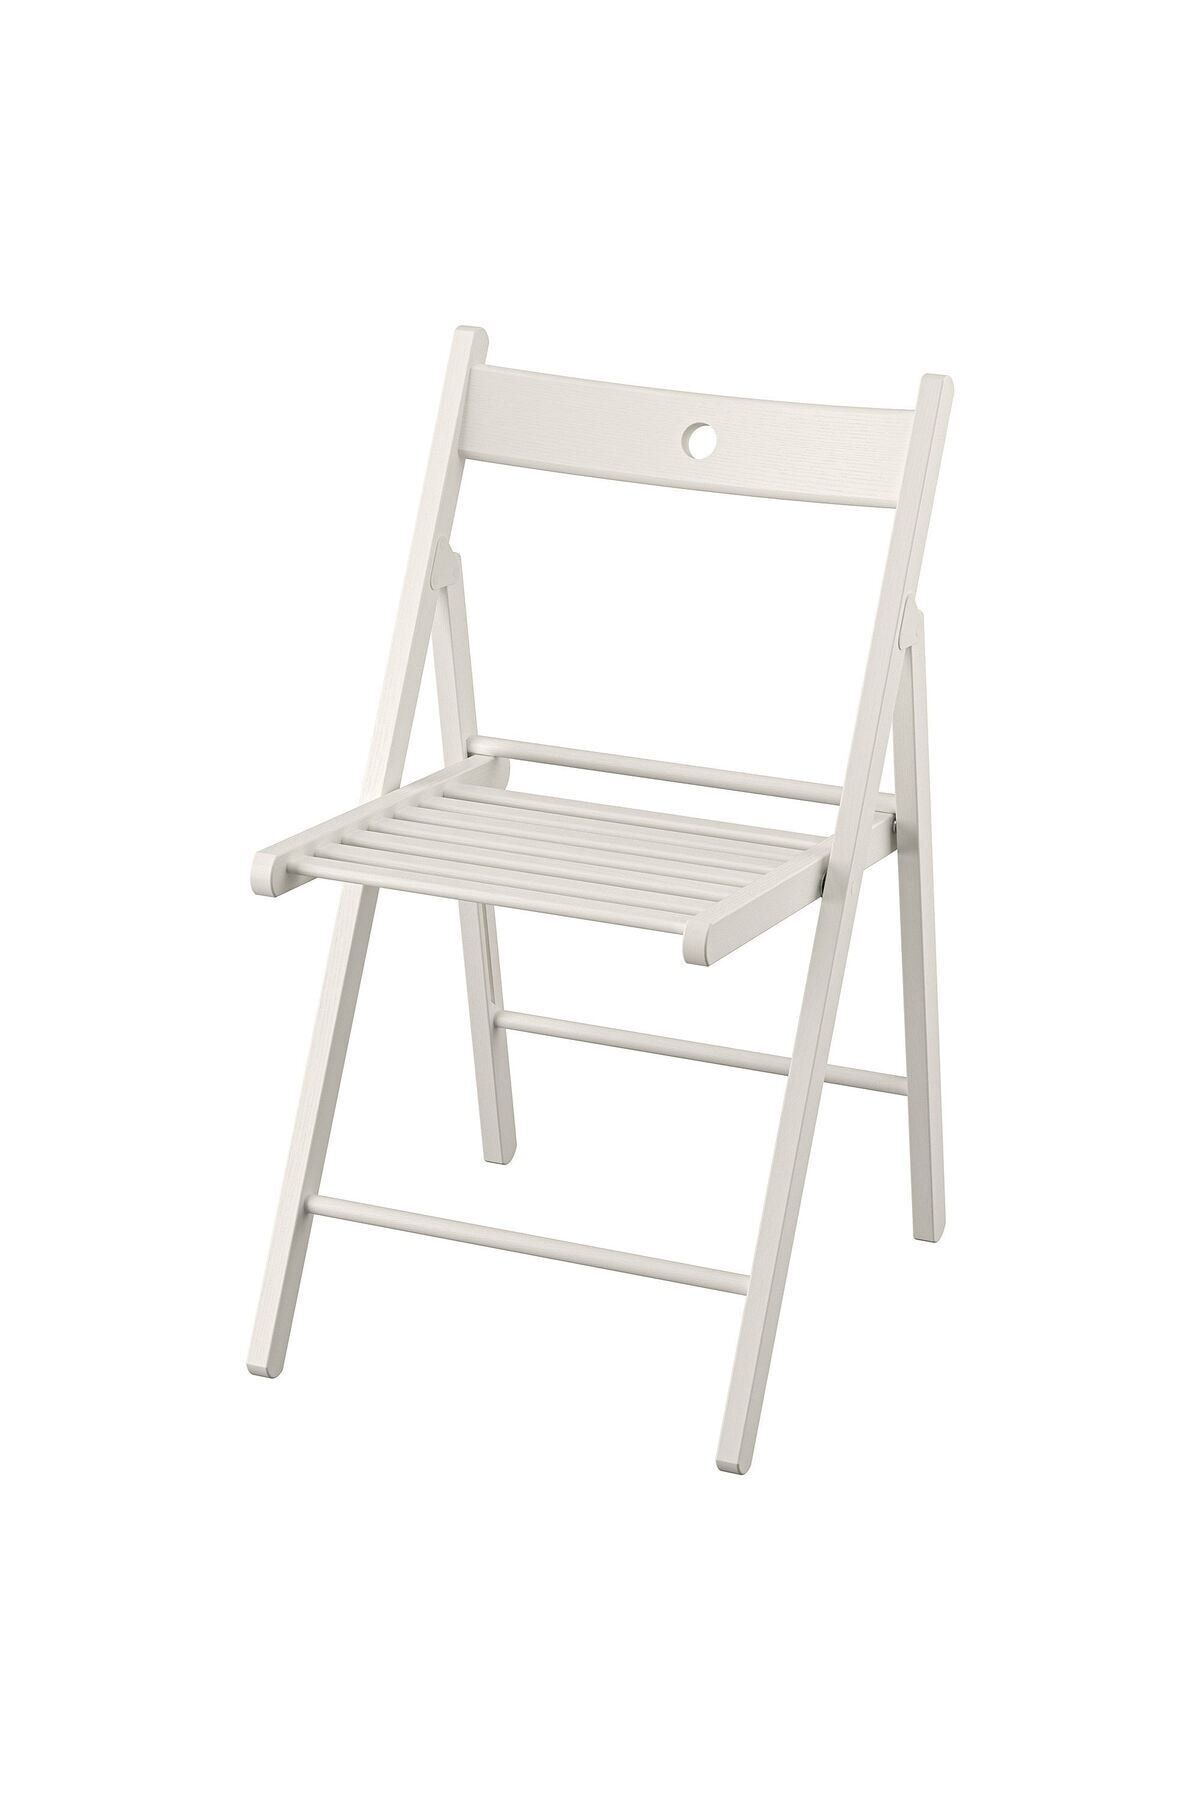 IKEA AKDENİZ FRÖSVI beyaz katlanır sandalye